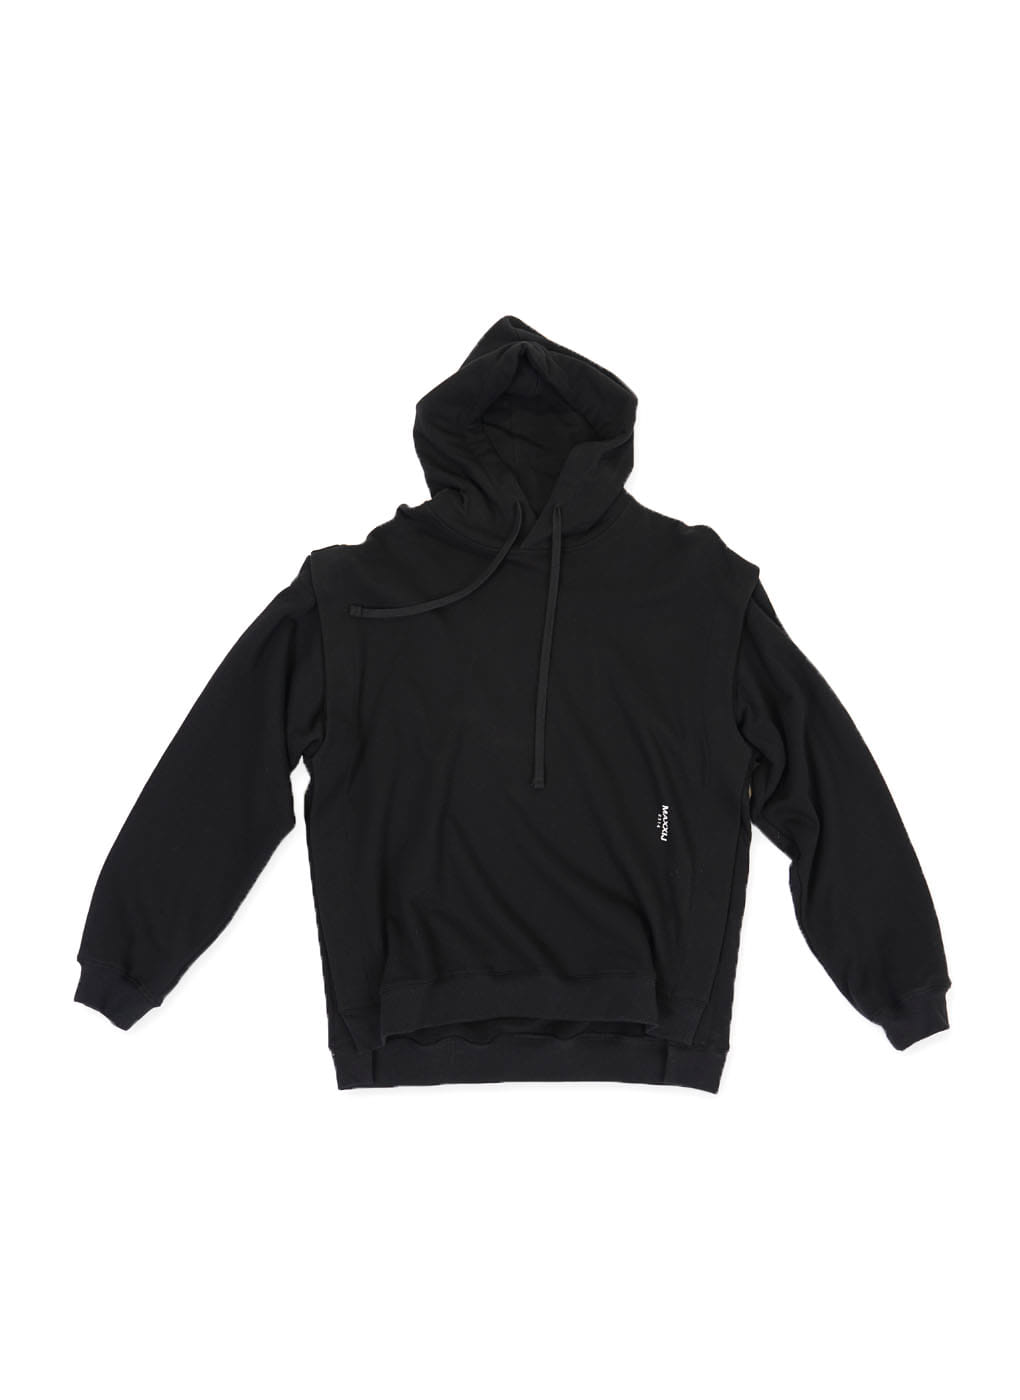 Black Detachable Sleeve Hoodie Sweatshirt